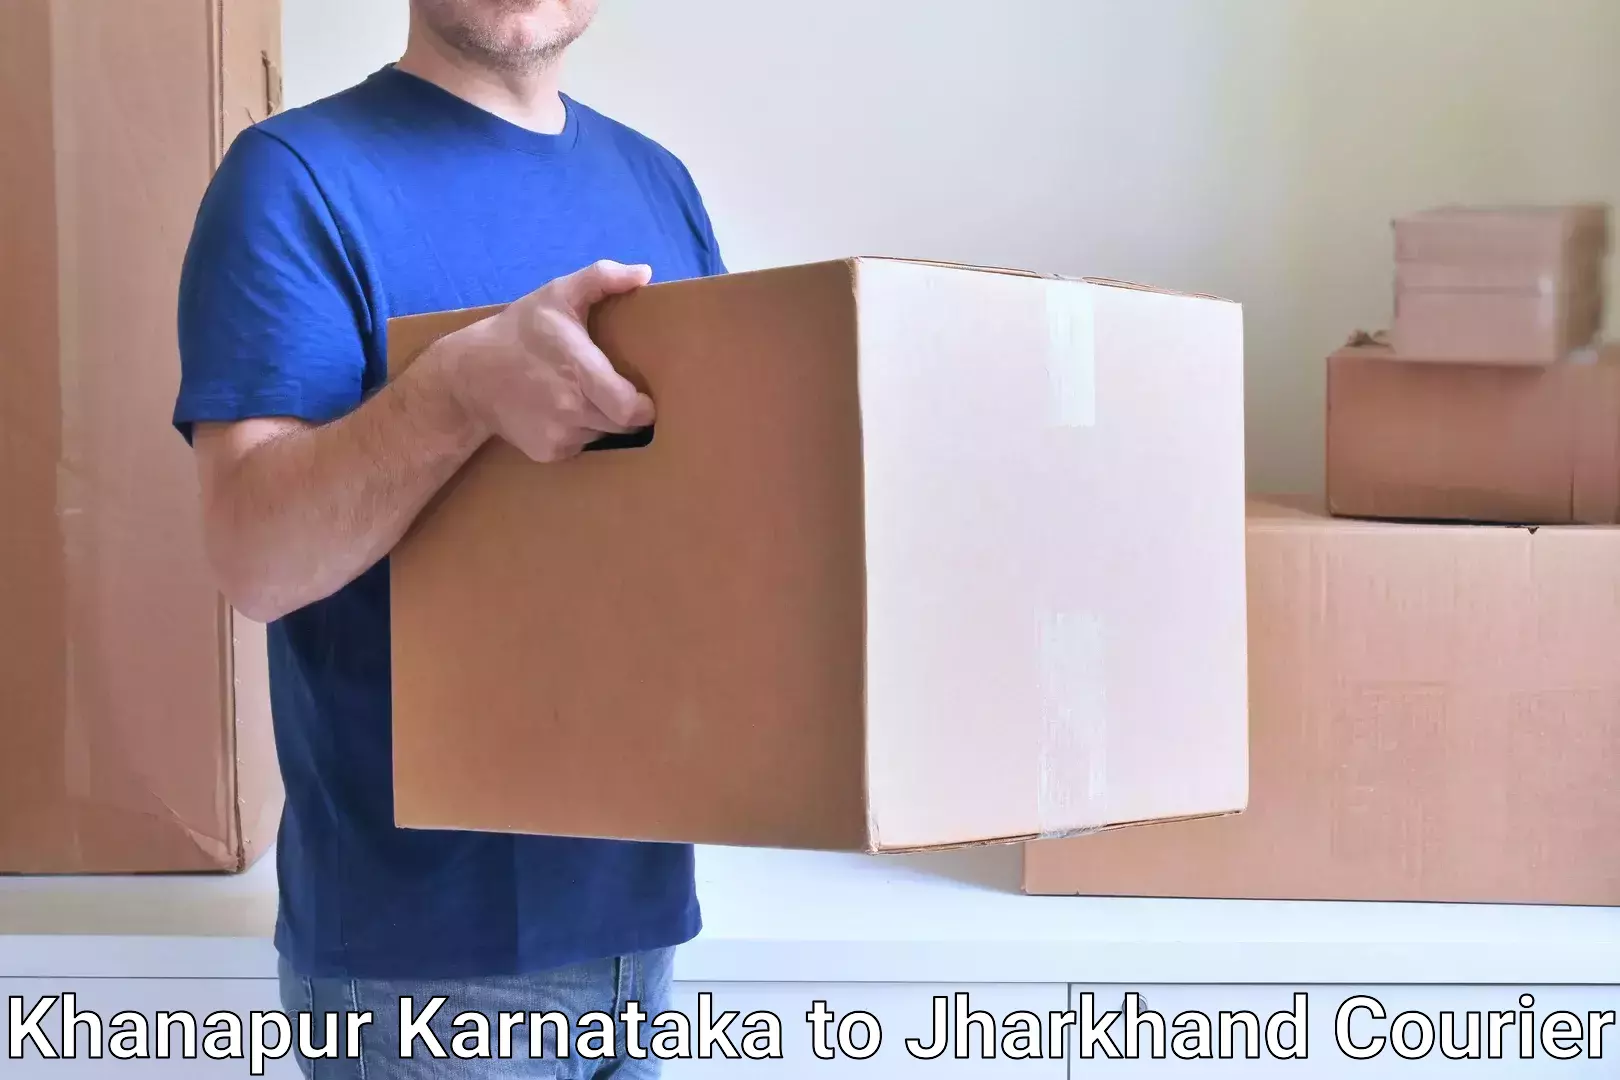 Logistics service provider Khanapur Karnataka to Jagannathpur